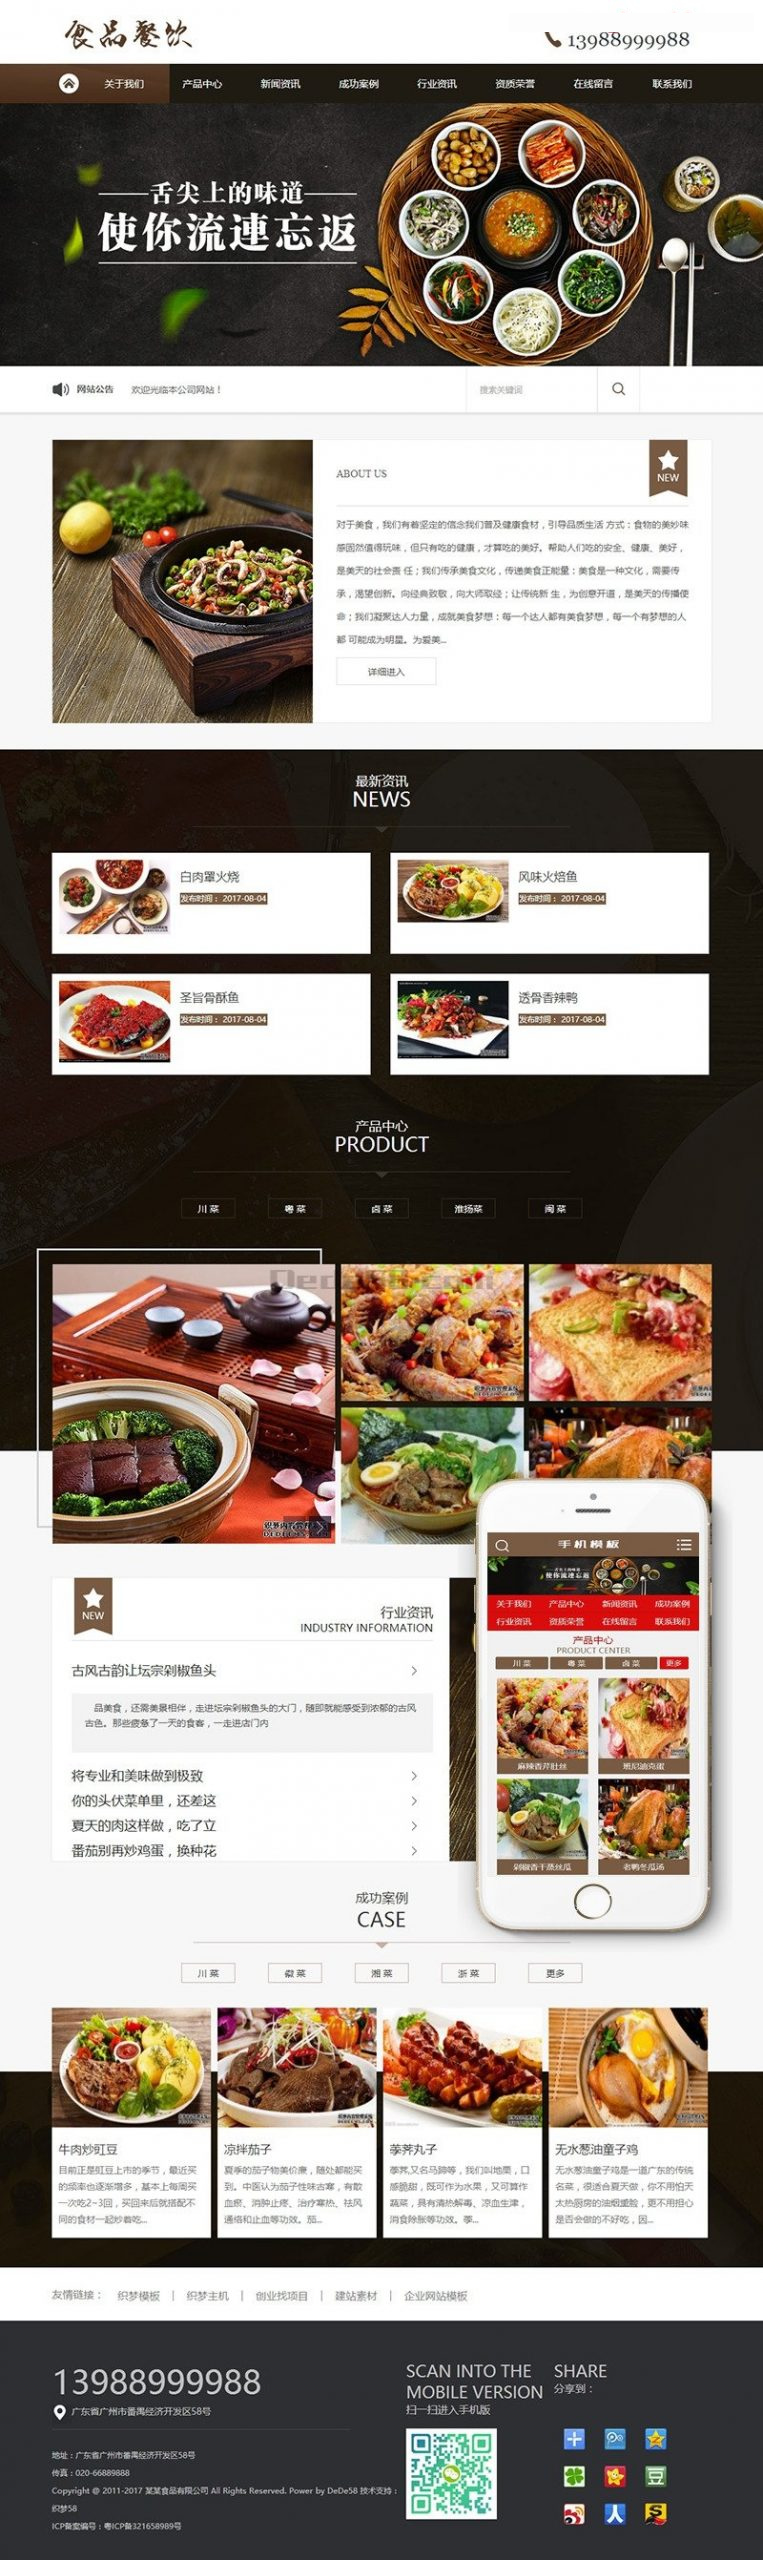 健康食品餐饮美食类网站源码 dedecms织梦模板 (带手机端)-轨迹网